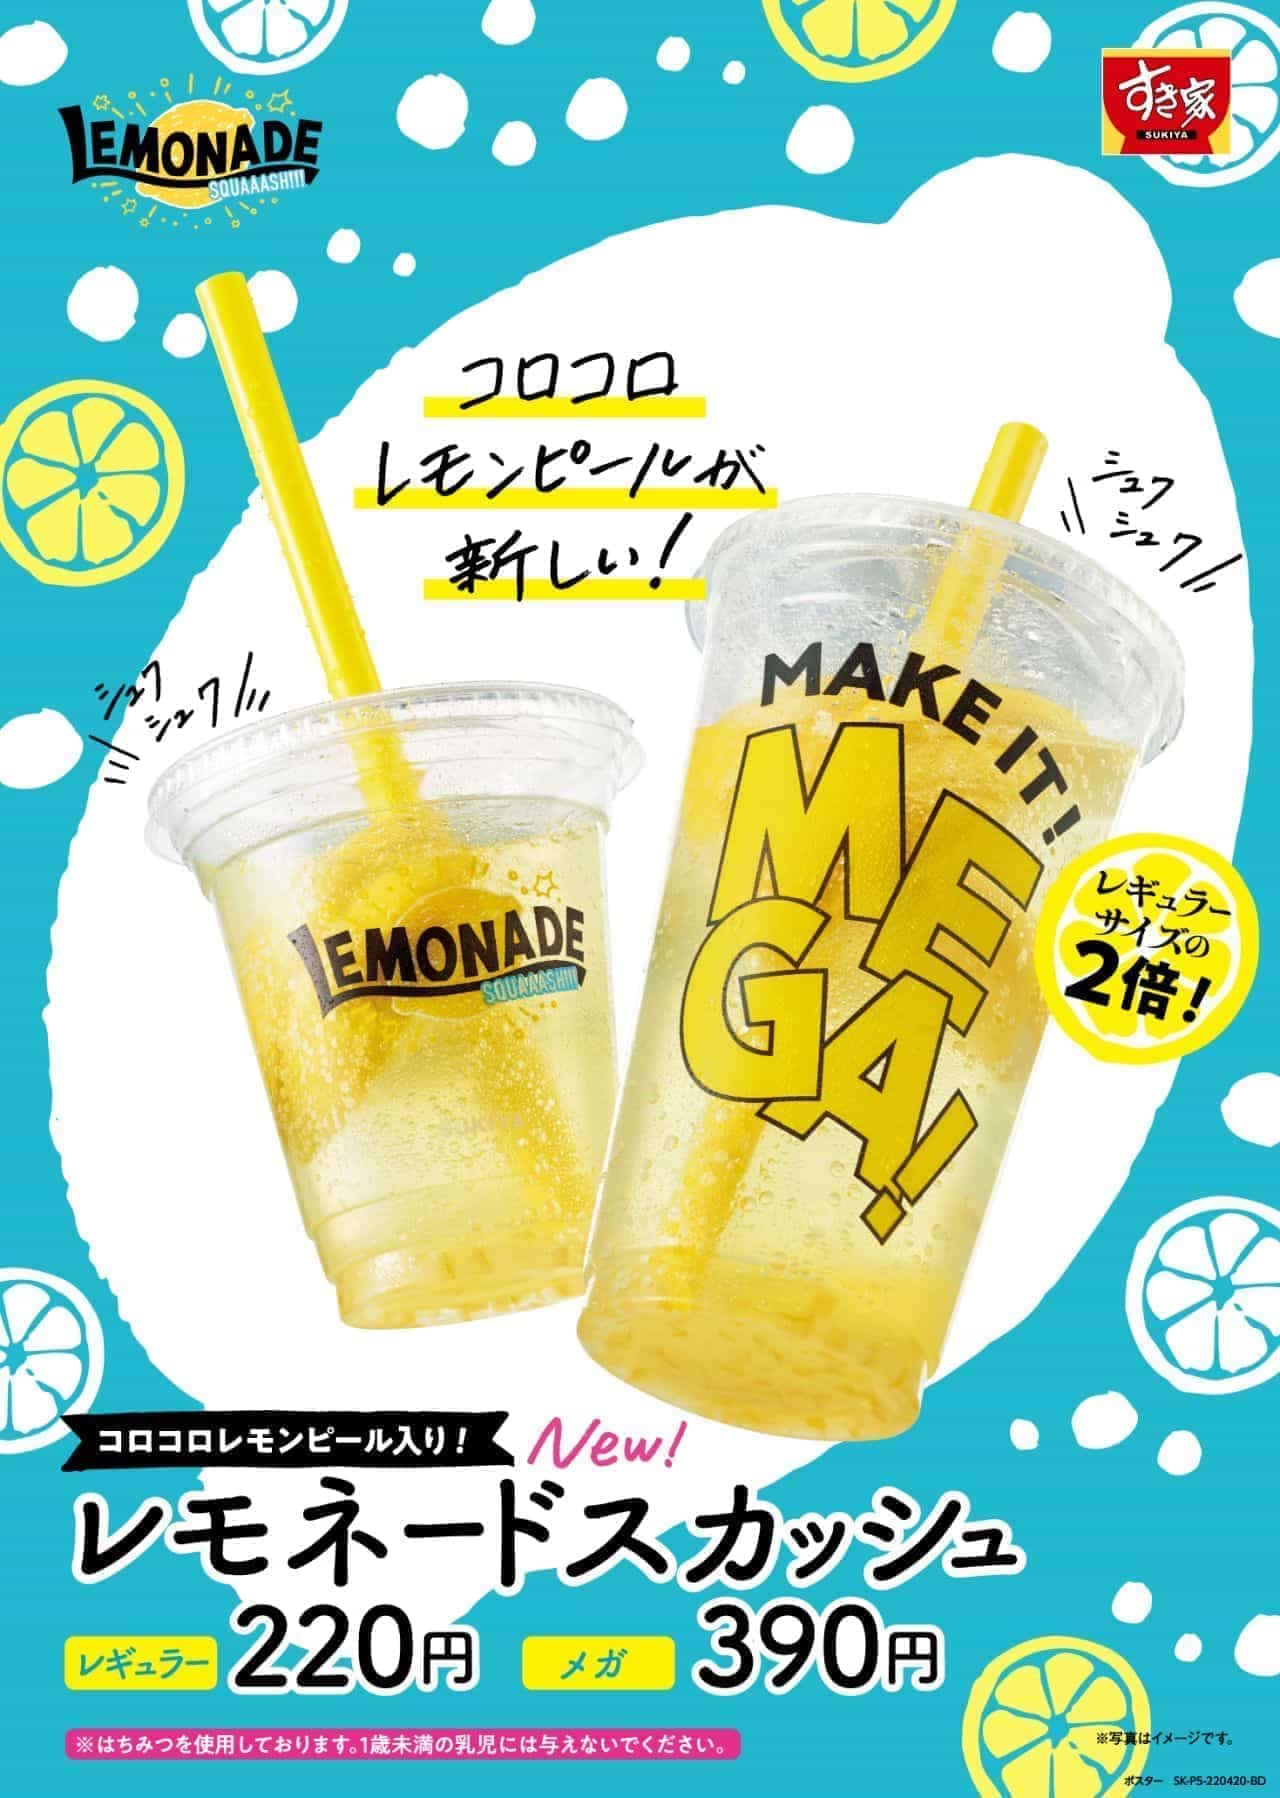 Sukiya "Lemonade Squash